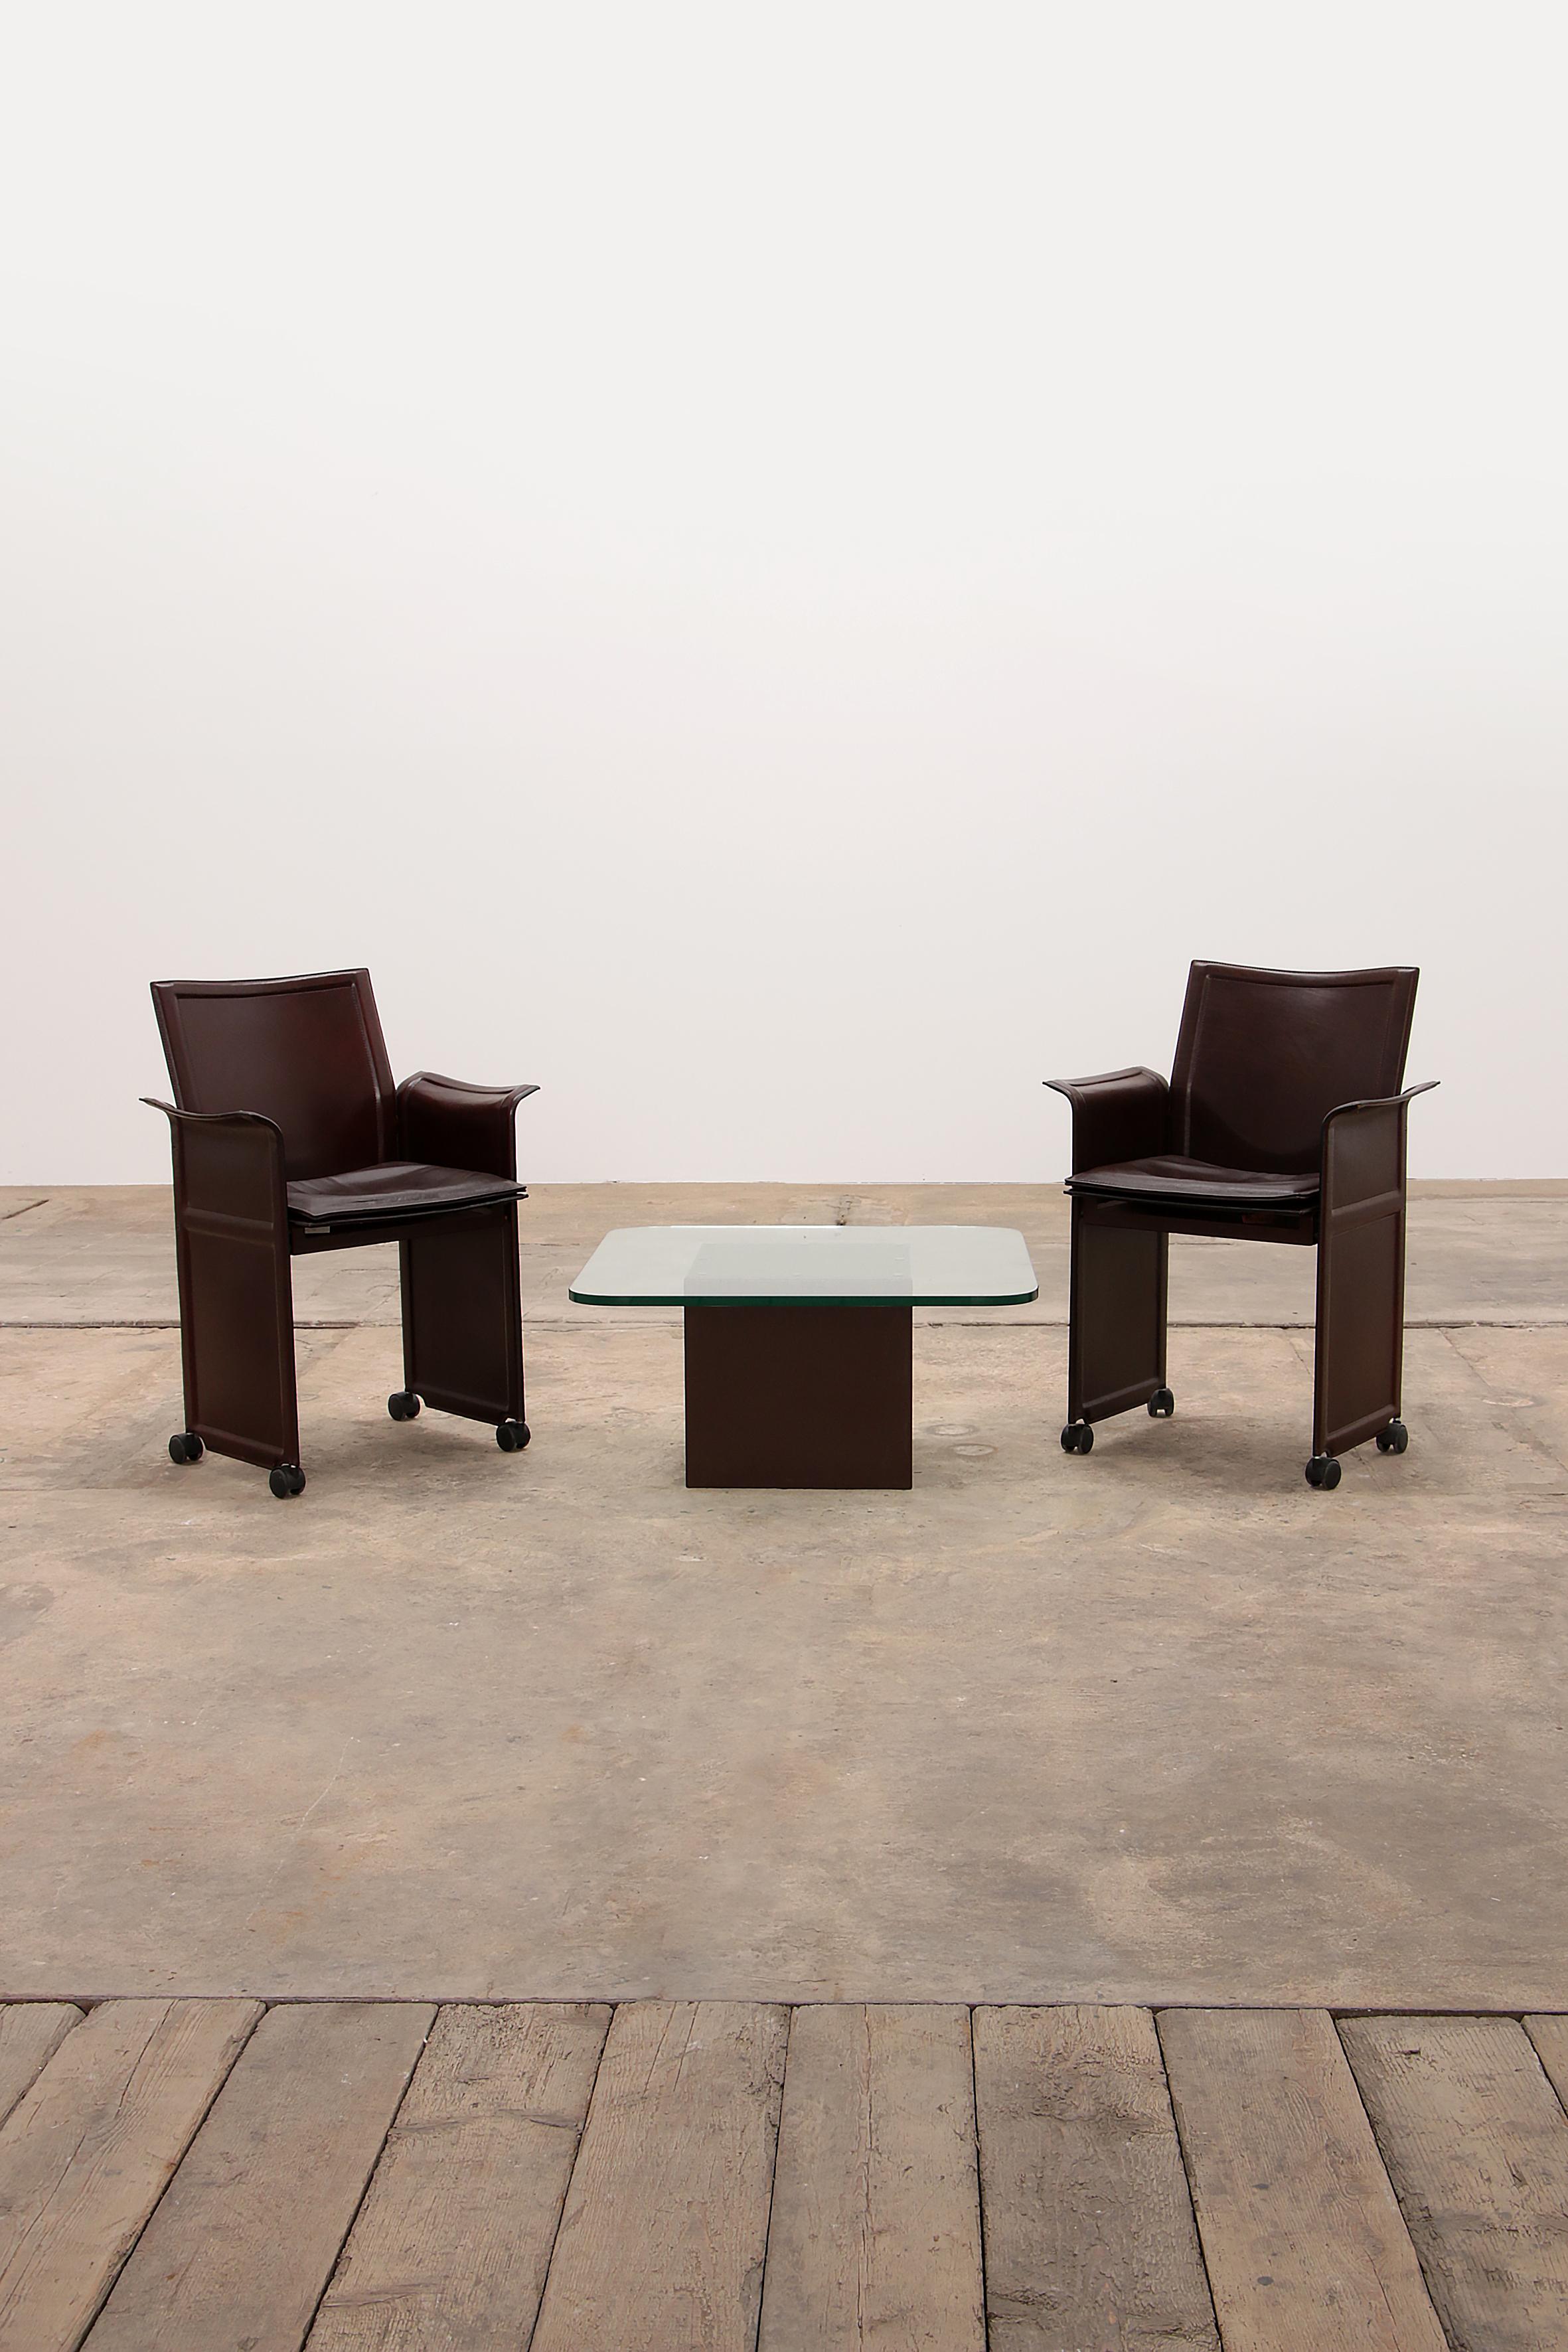 
Ensemble moderne de 2 chaises vintage marron chocolat conçues par Tito Agnoli pour Matteo Grassi 1979, Italie. Avec une table basse. La particularité du modèle de chaise Korium est le cuir matelassé de haute qualité avec un cadre en métal. Ces